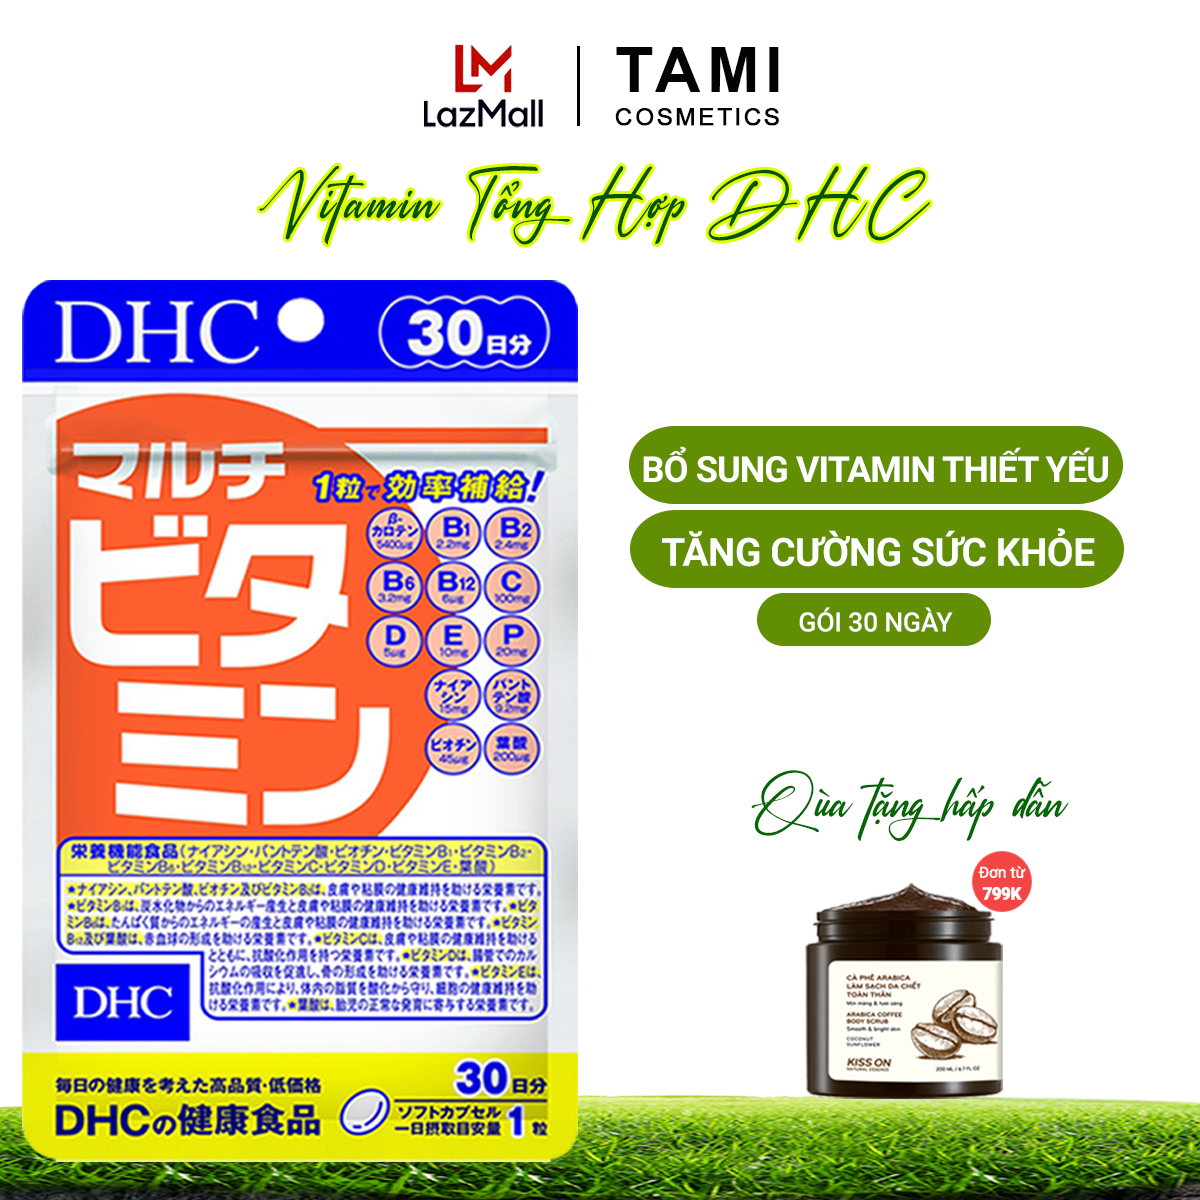 Viên uống Vitamin tổng hợp DHC Nhật Bản Multil Vitamins thực phẩm chức năng bổ sung 12 vitamin thiết yếu hàng ngày nâng cao sức khỏe, làm đẹp da gói 30 ngày TA-DHC-MUL30